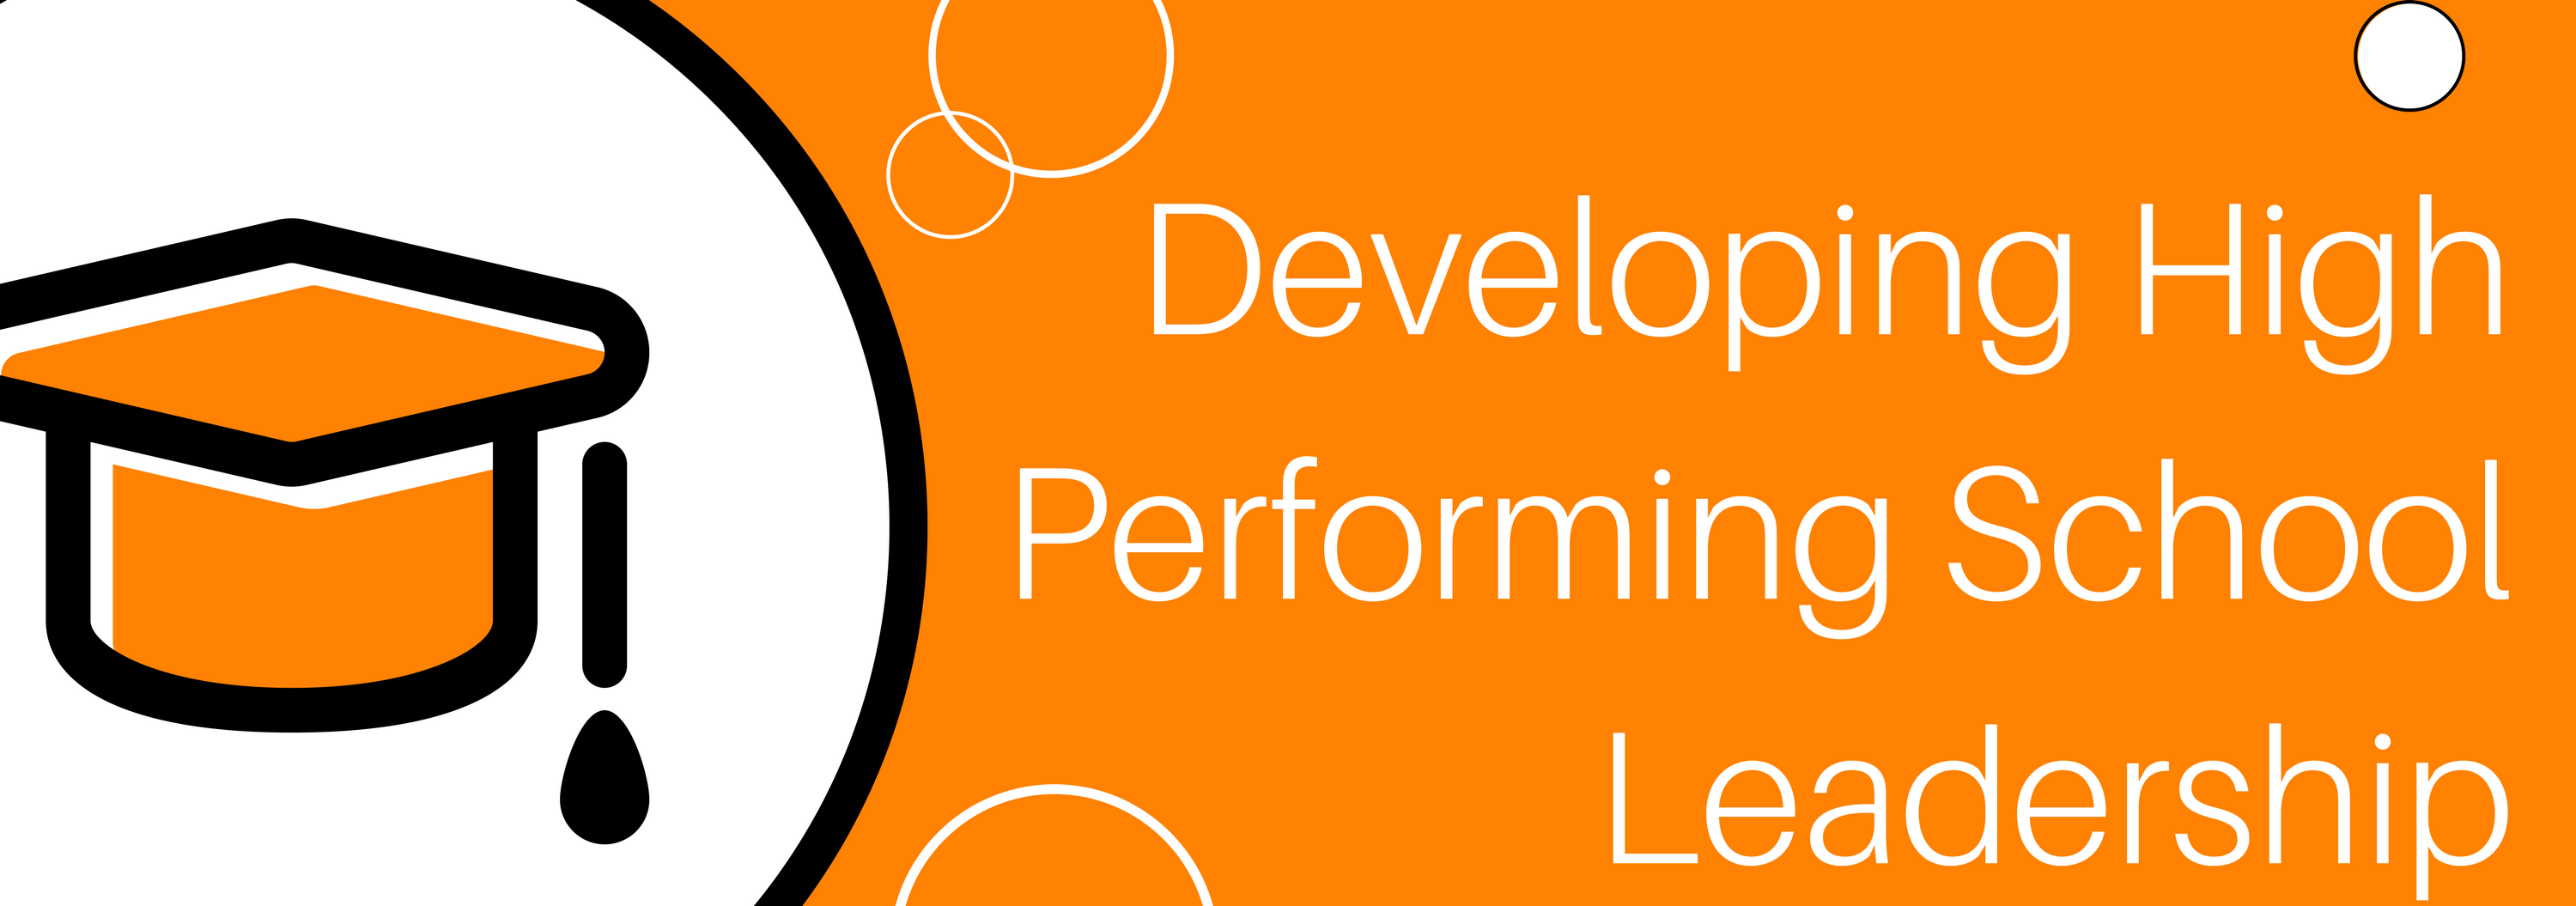 Developing high performing school leadership